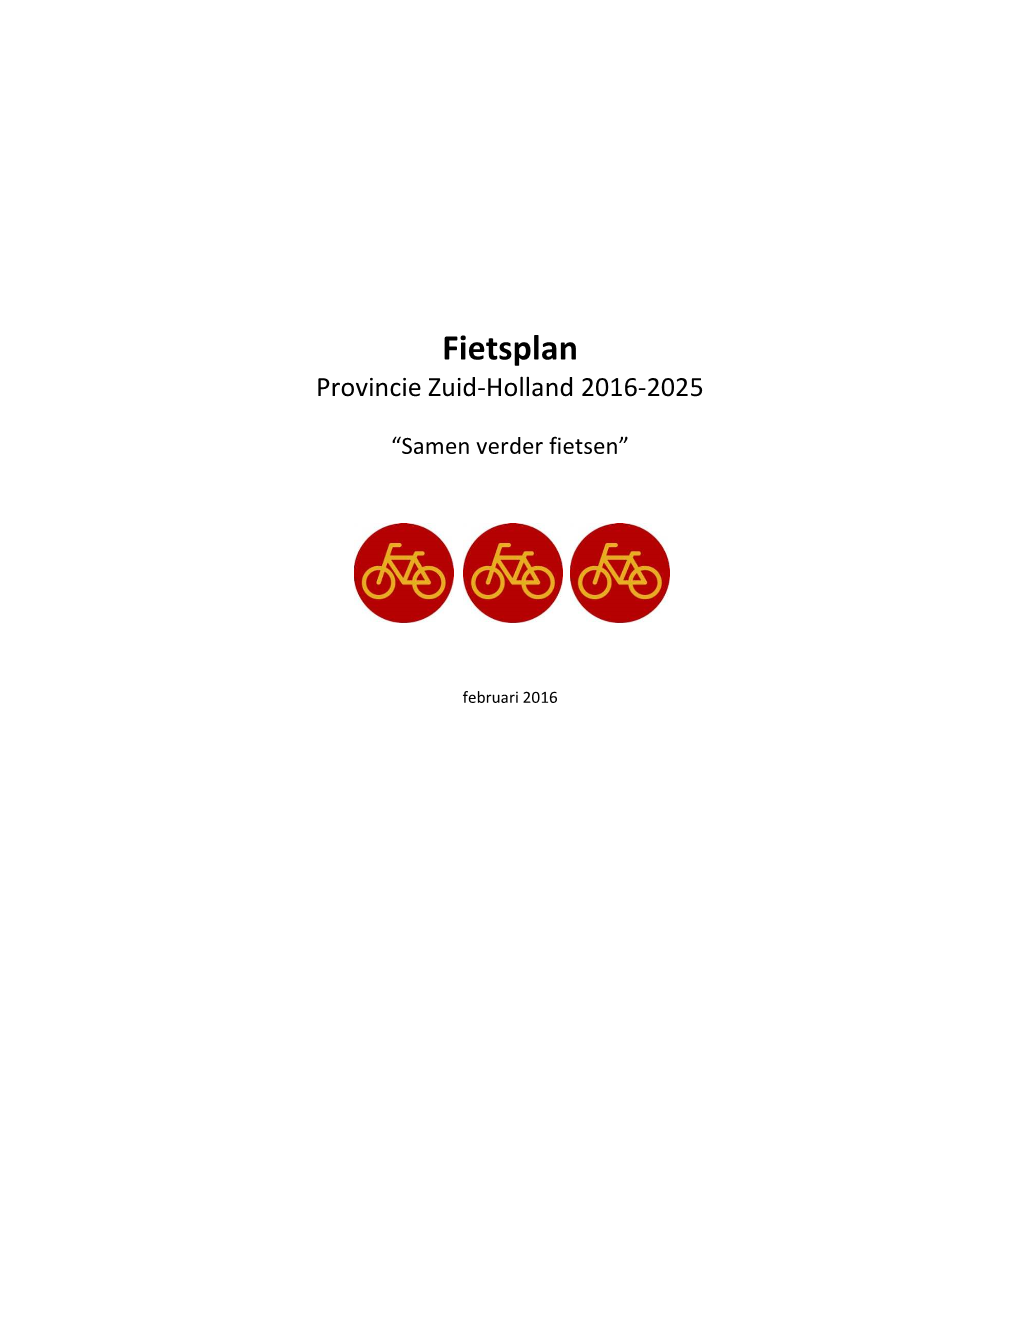 Fietsplan PZH 2016-2025